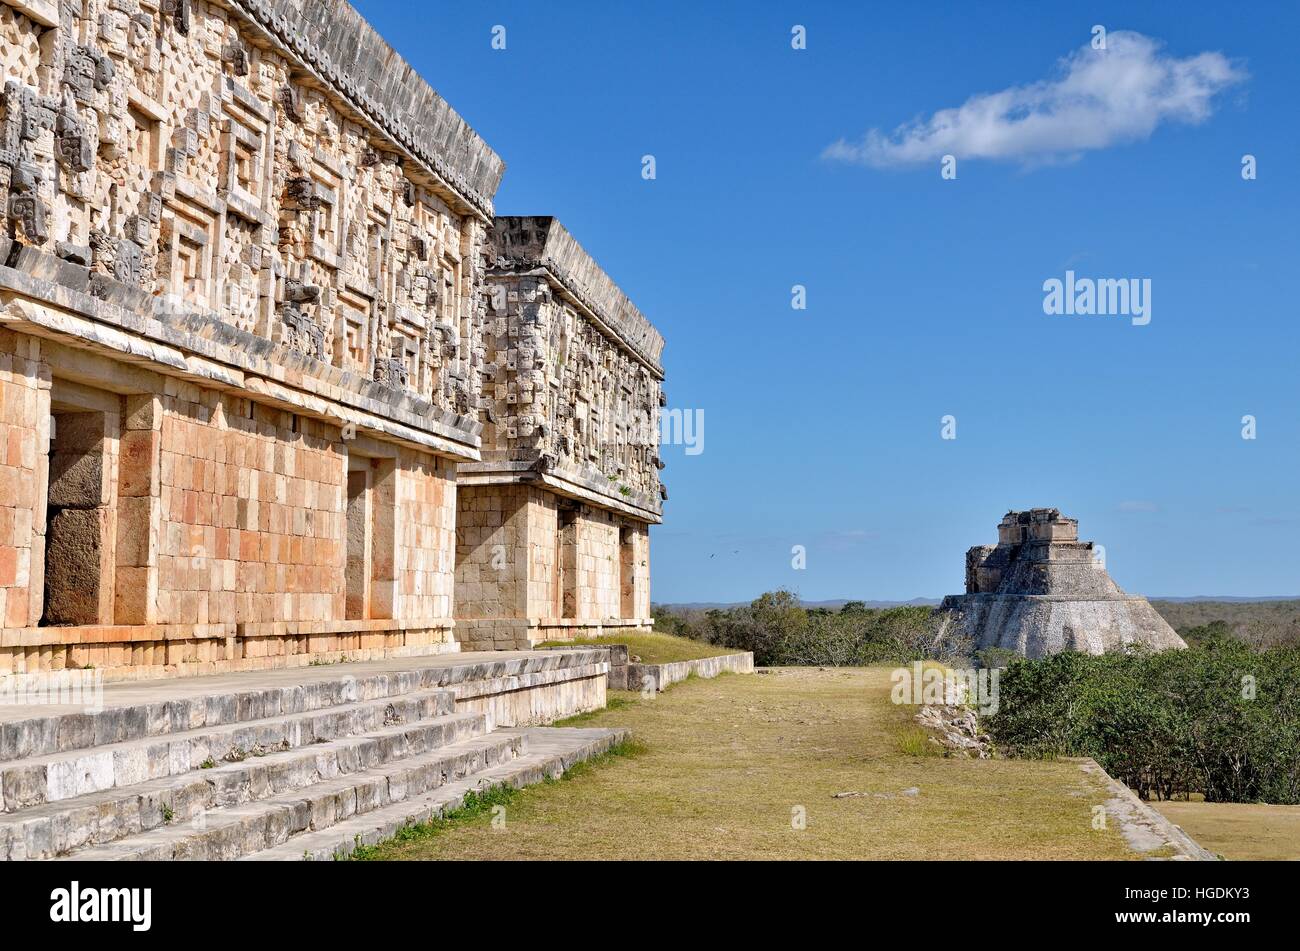 Palacio del Gobernador, el palacio del gobernador, a la izquierda, y la Pirámide del Adivino, mago de la pirámide, la ciudad maya de Uxmal, Yucatan. Foto de stock